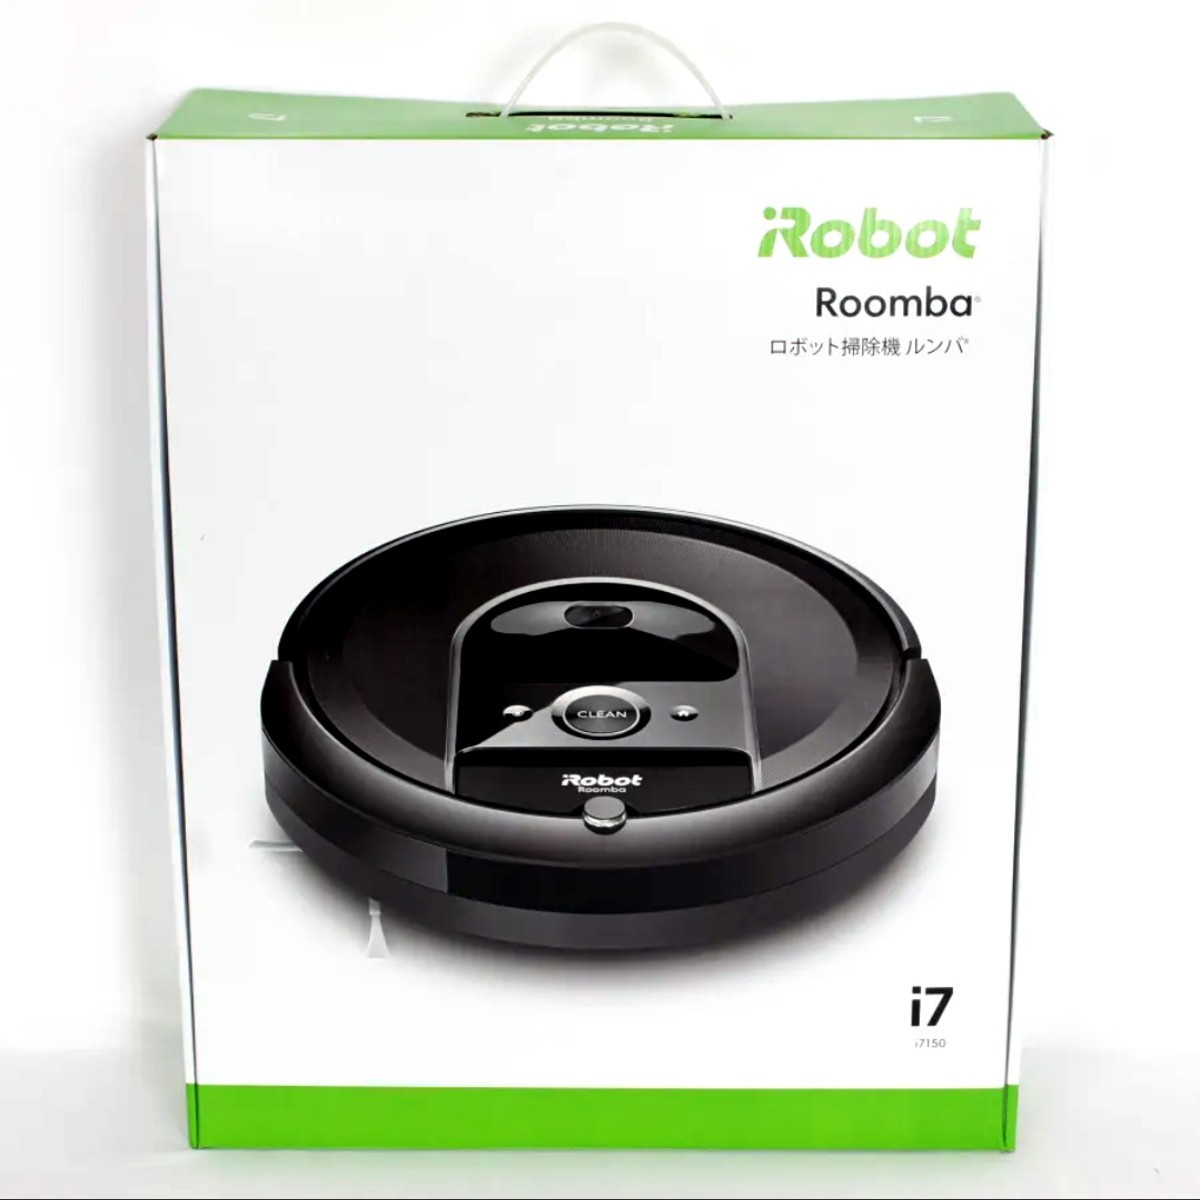 送料無料 新品 ルンバ i715060 本体 ホームベース セット ロボット掃除機 Roomba ロボット 掃除機 掃除 プレゼント ギフト お祝い 新築祝い